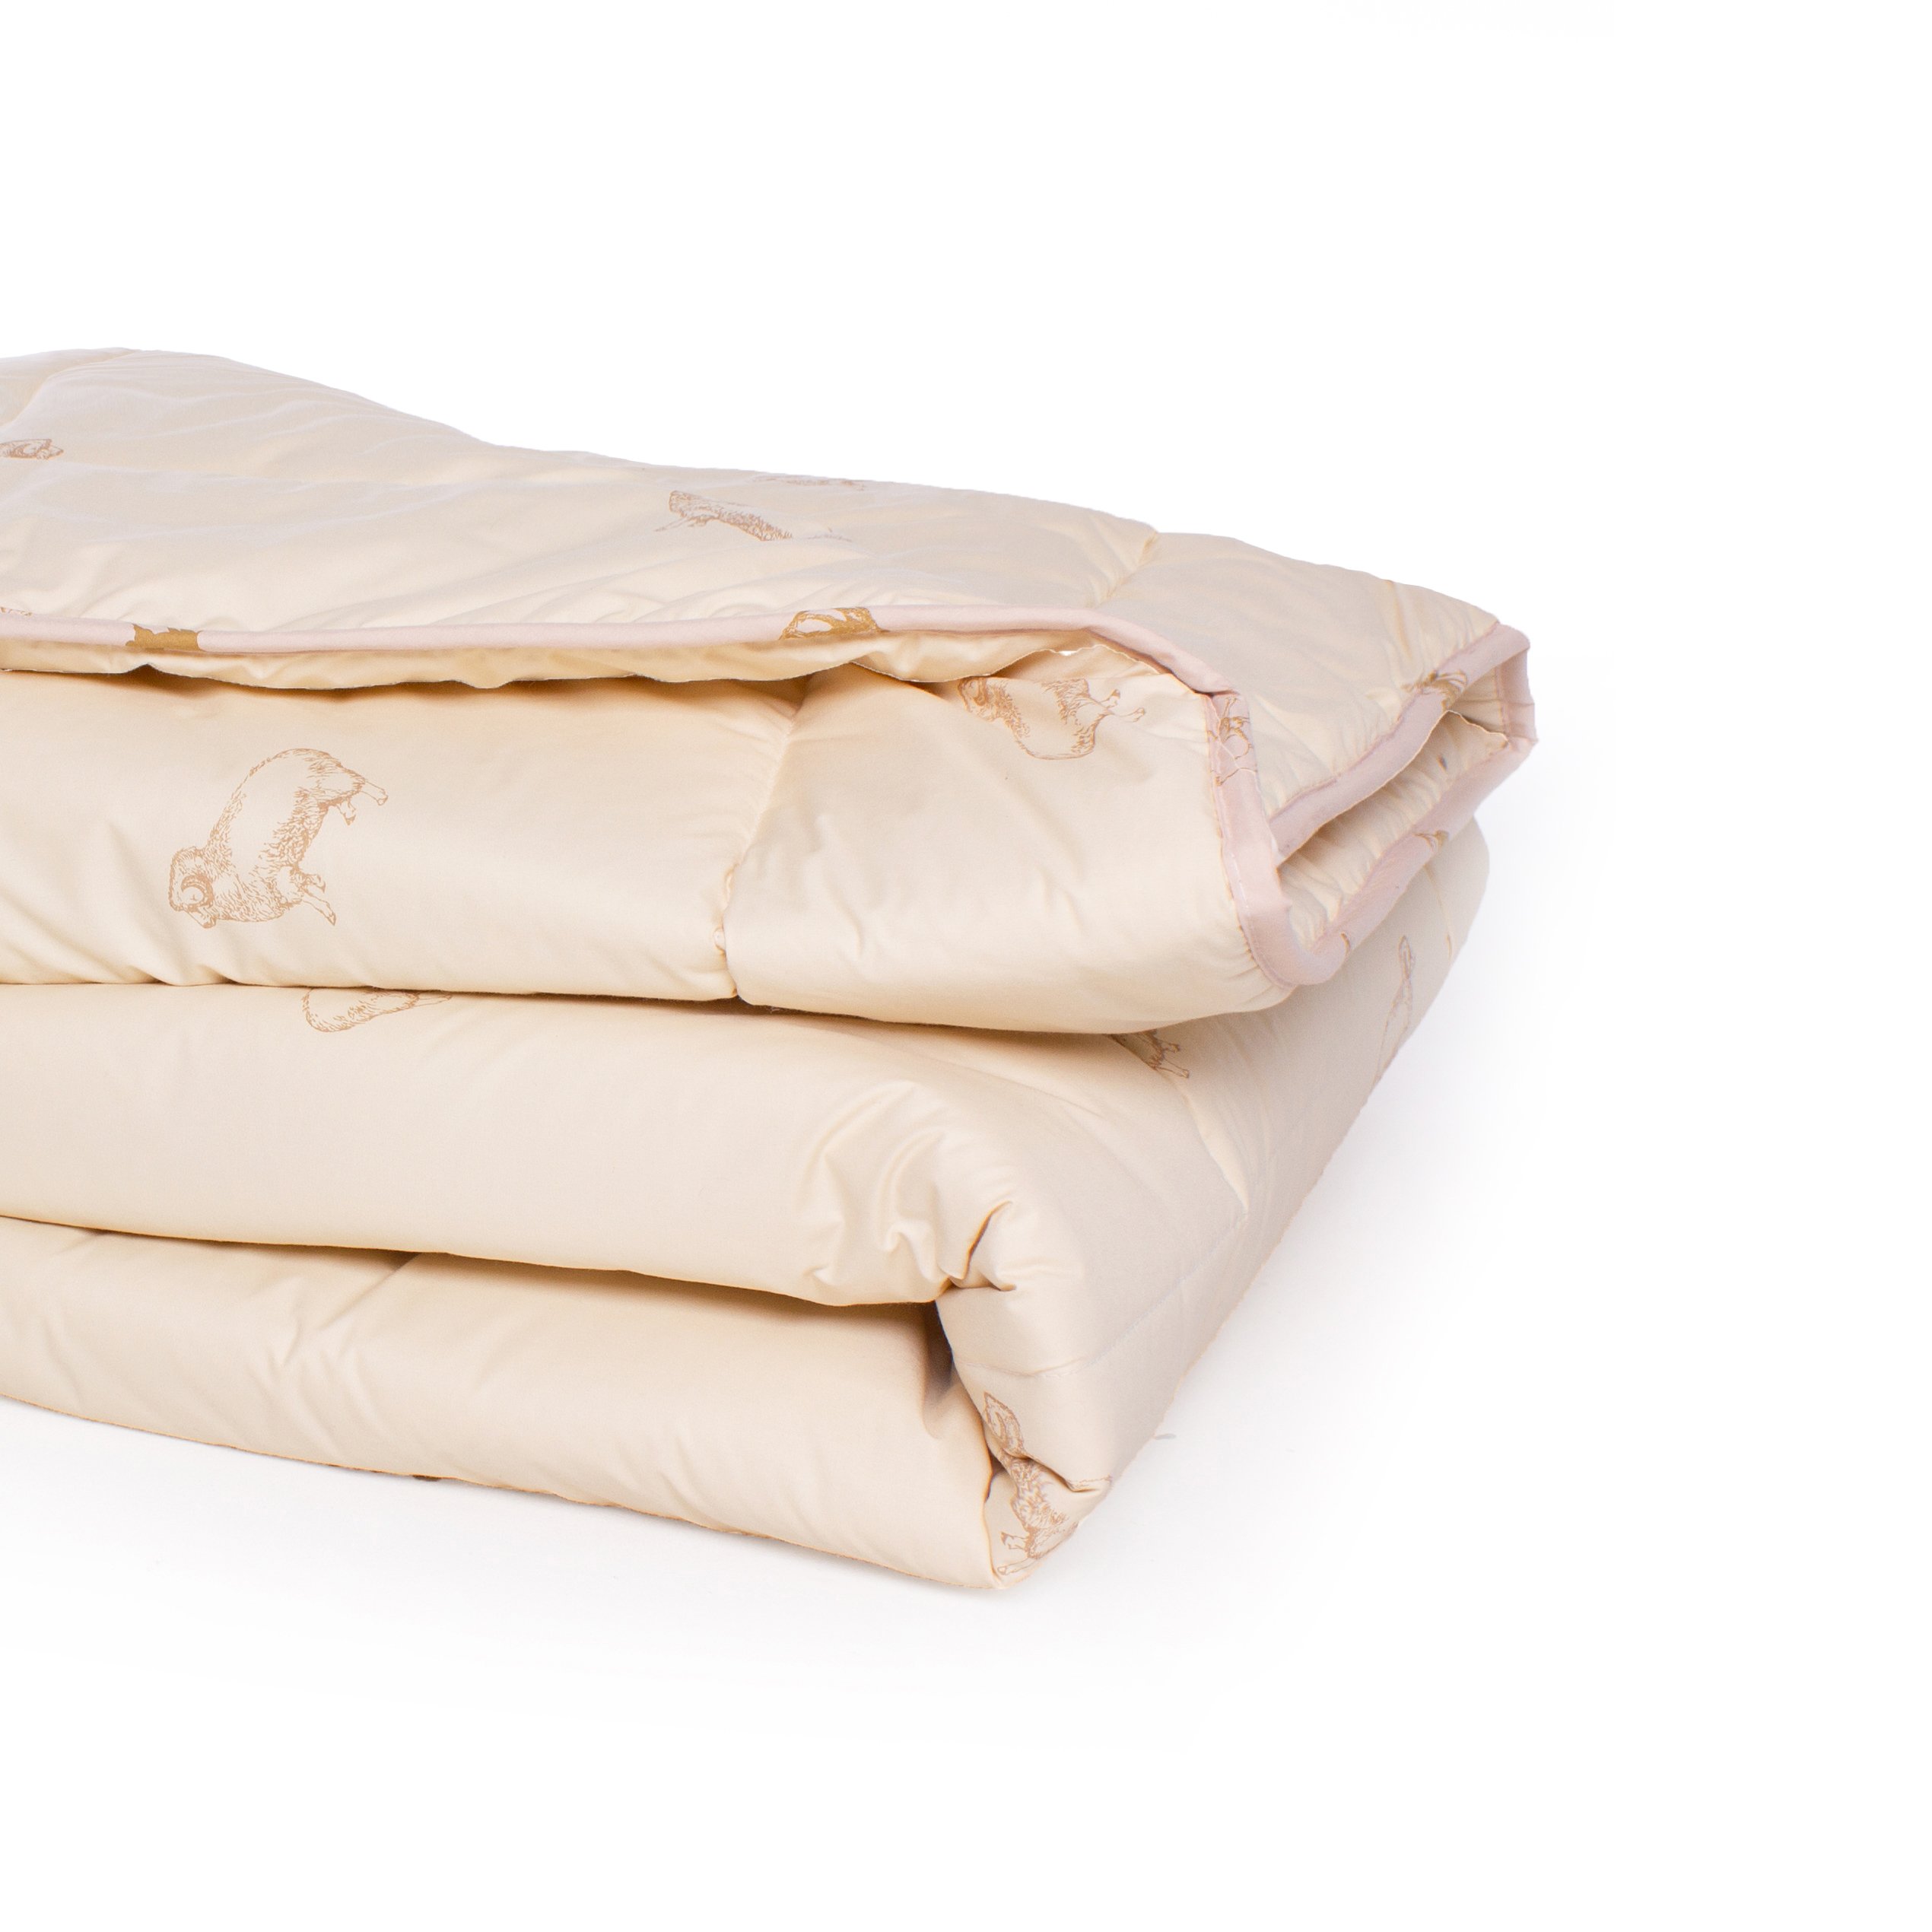 Одеяло шерстяное MirSon Gold Camel №024, зимнее, 200x220 см, кремовое - фото 3